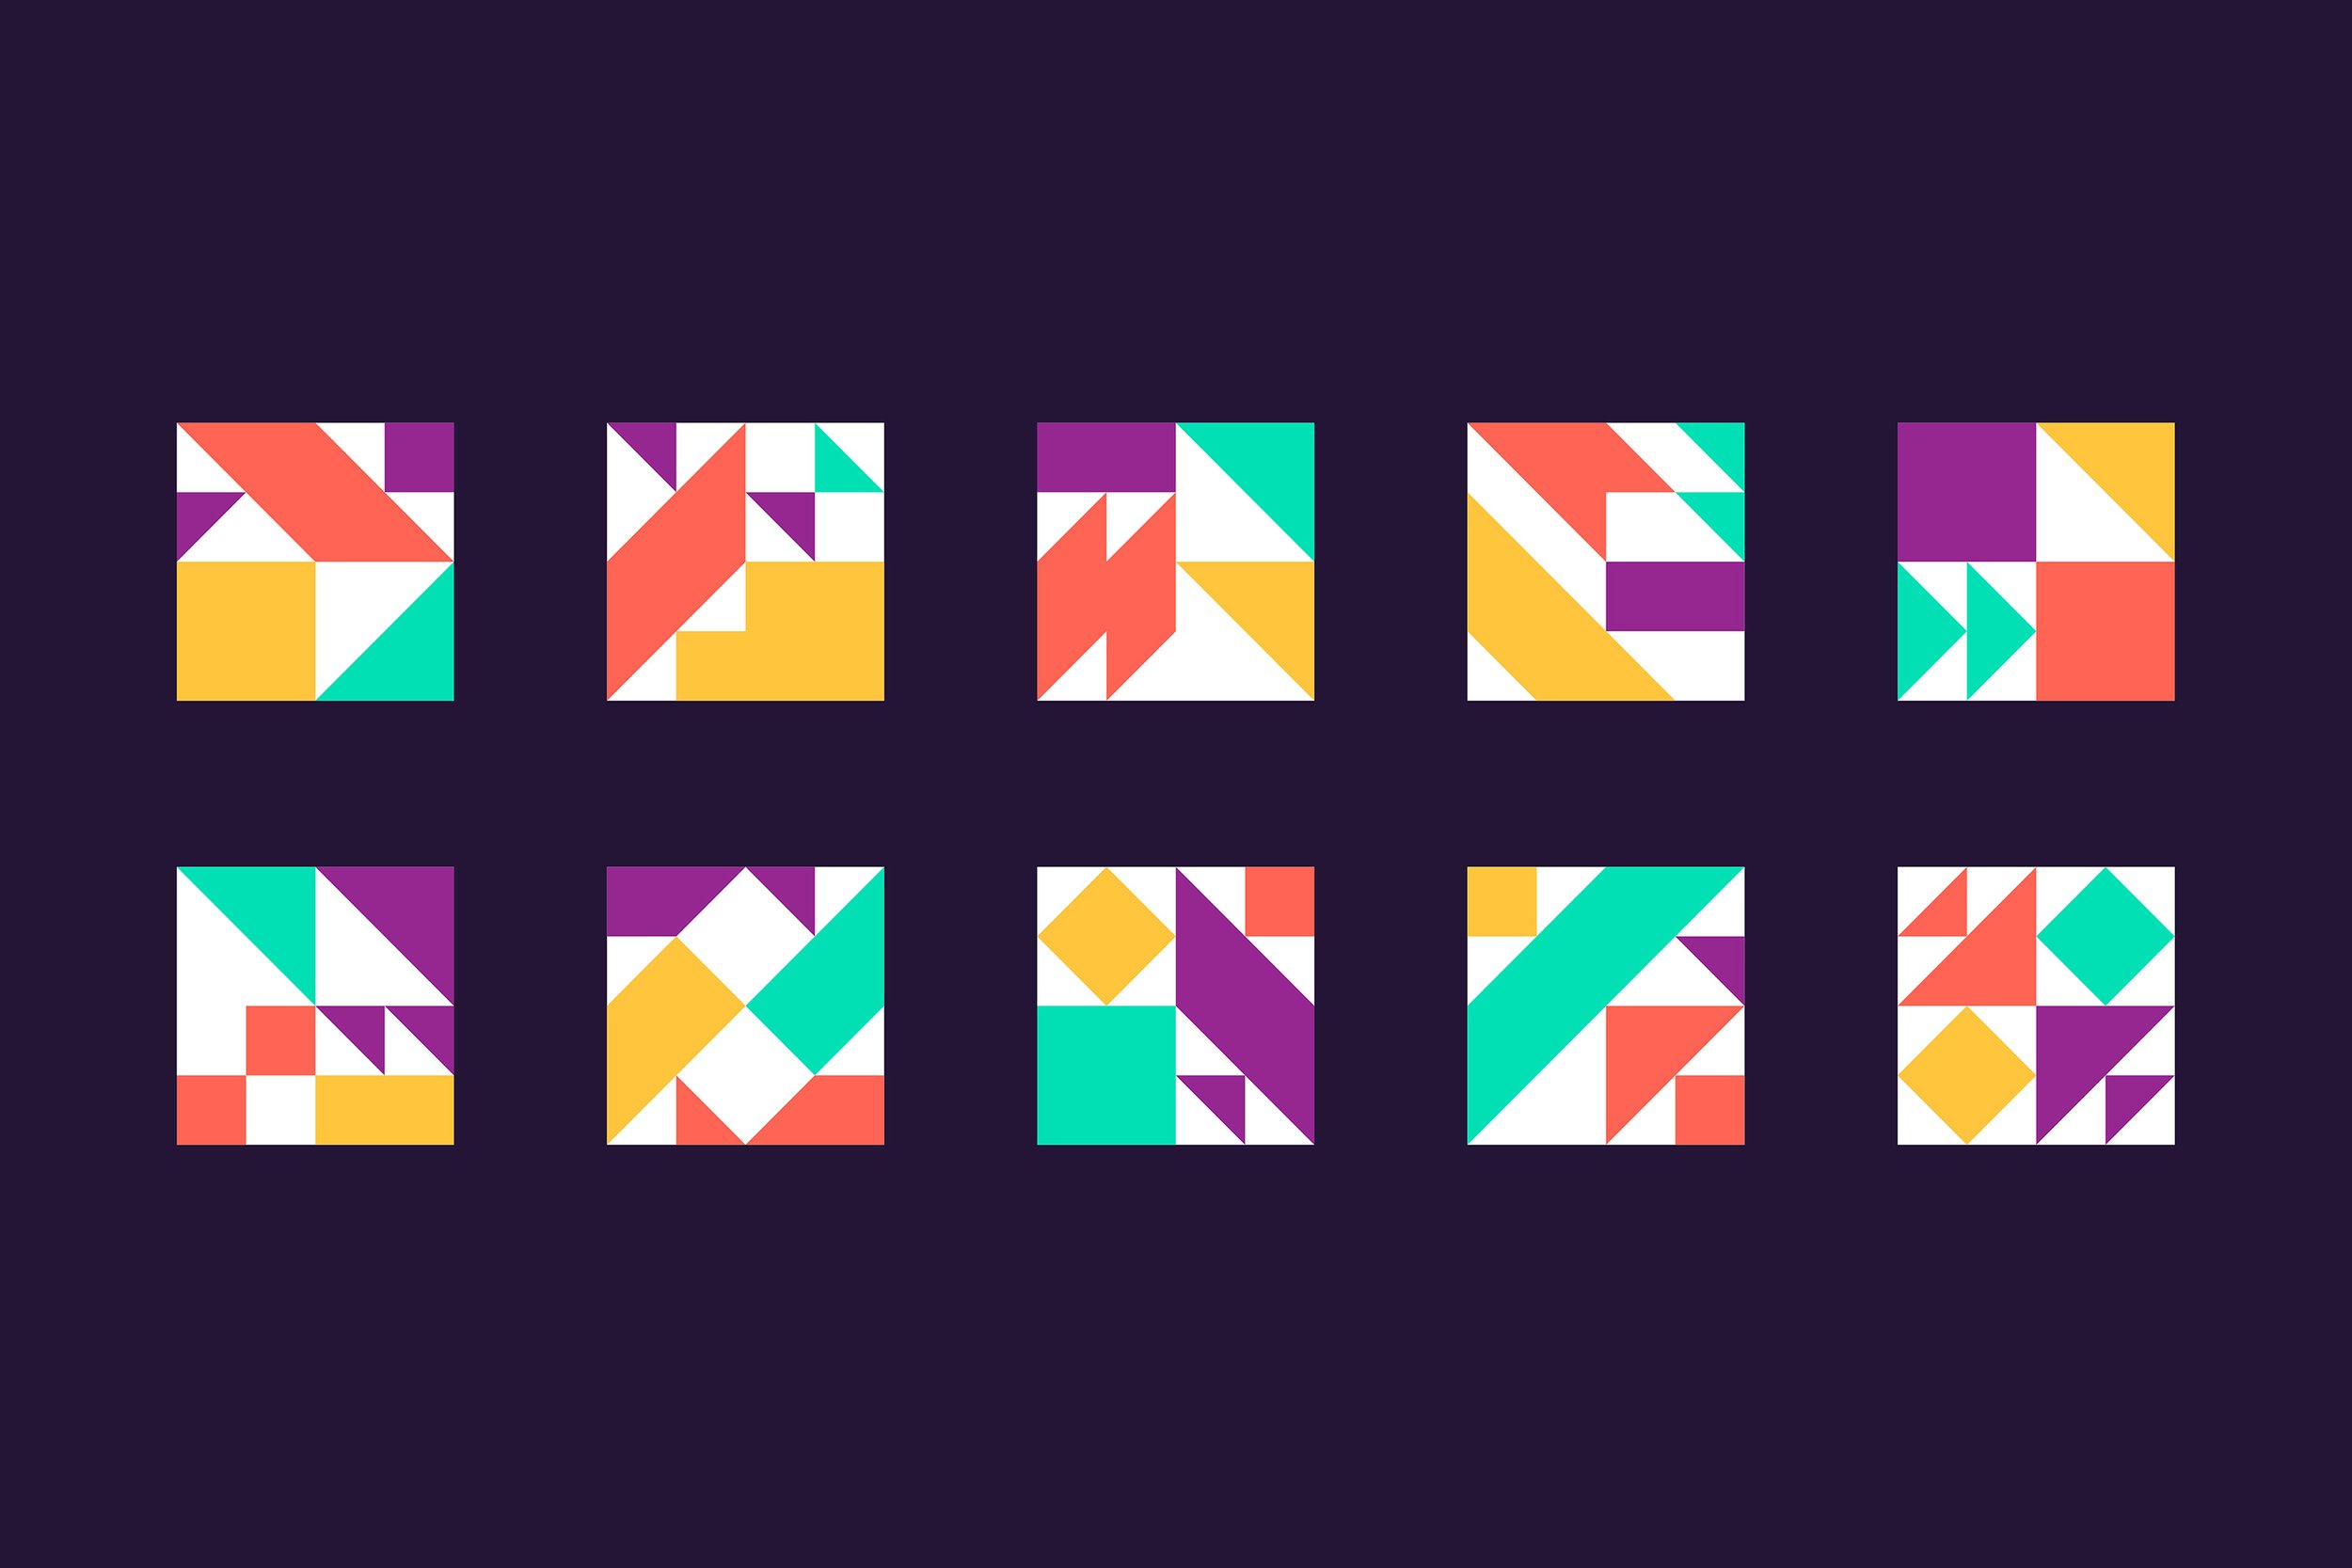 picpacker-logo-variations.jpg